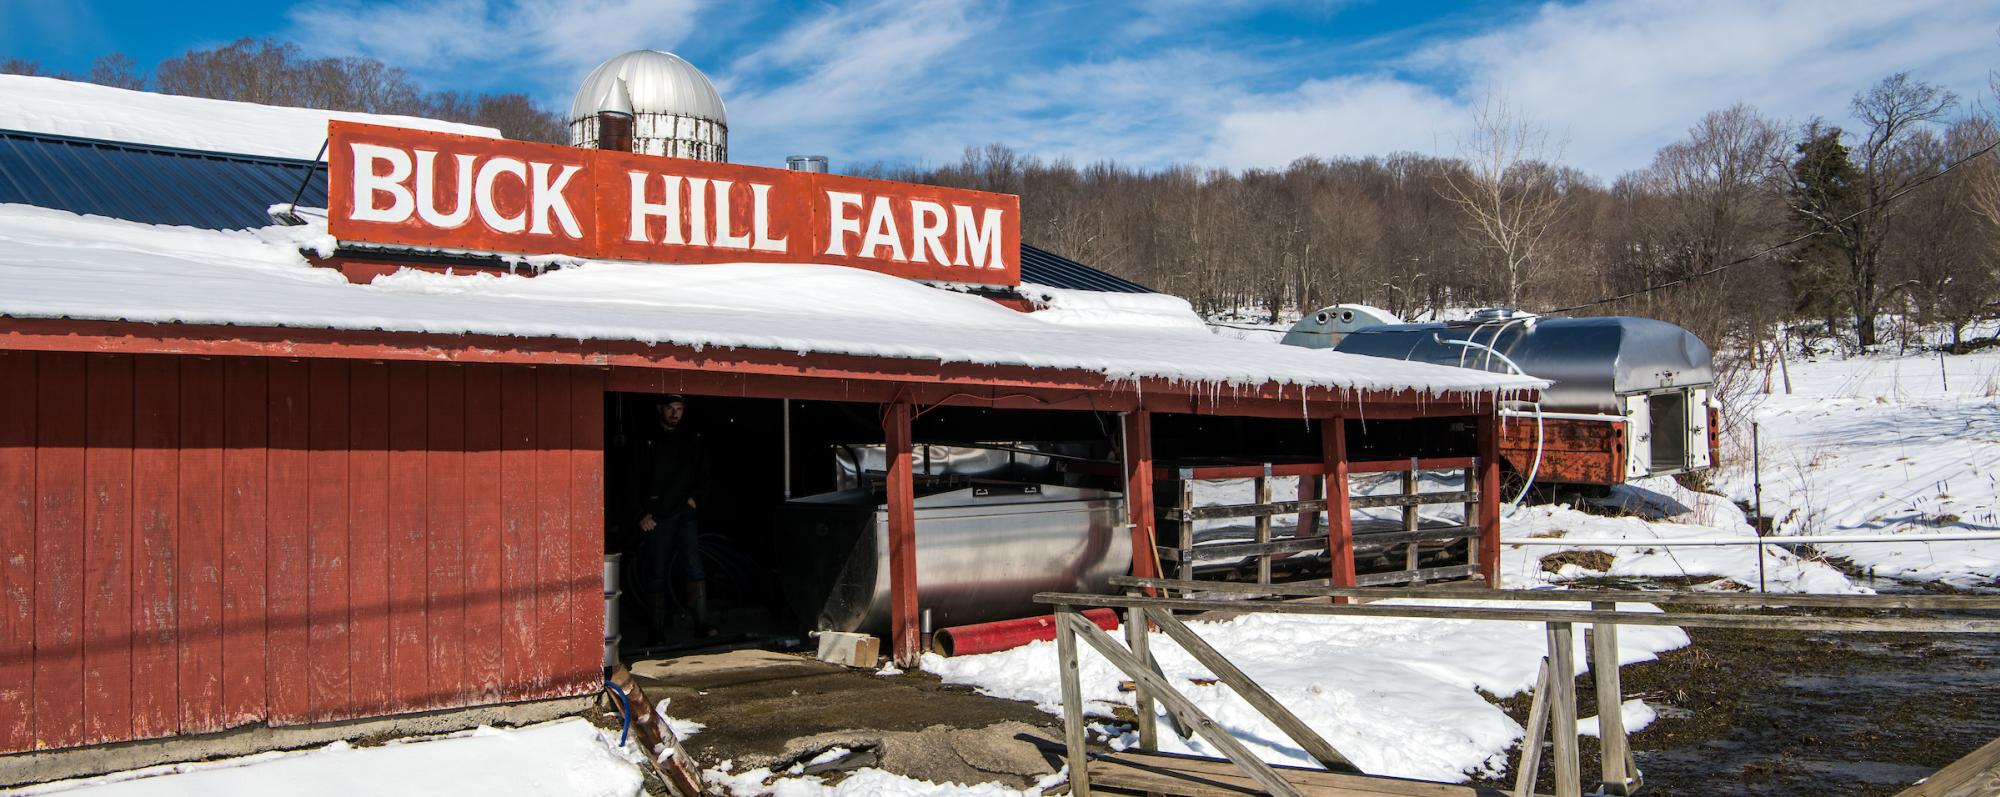 Buck Hill Farm, Jefferson